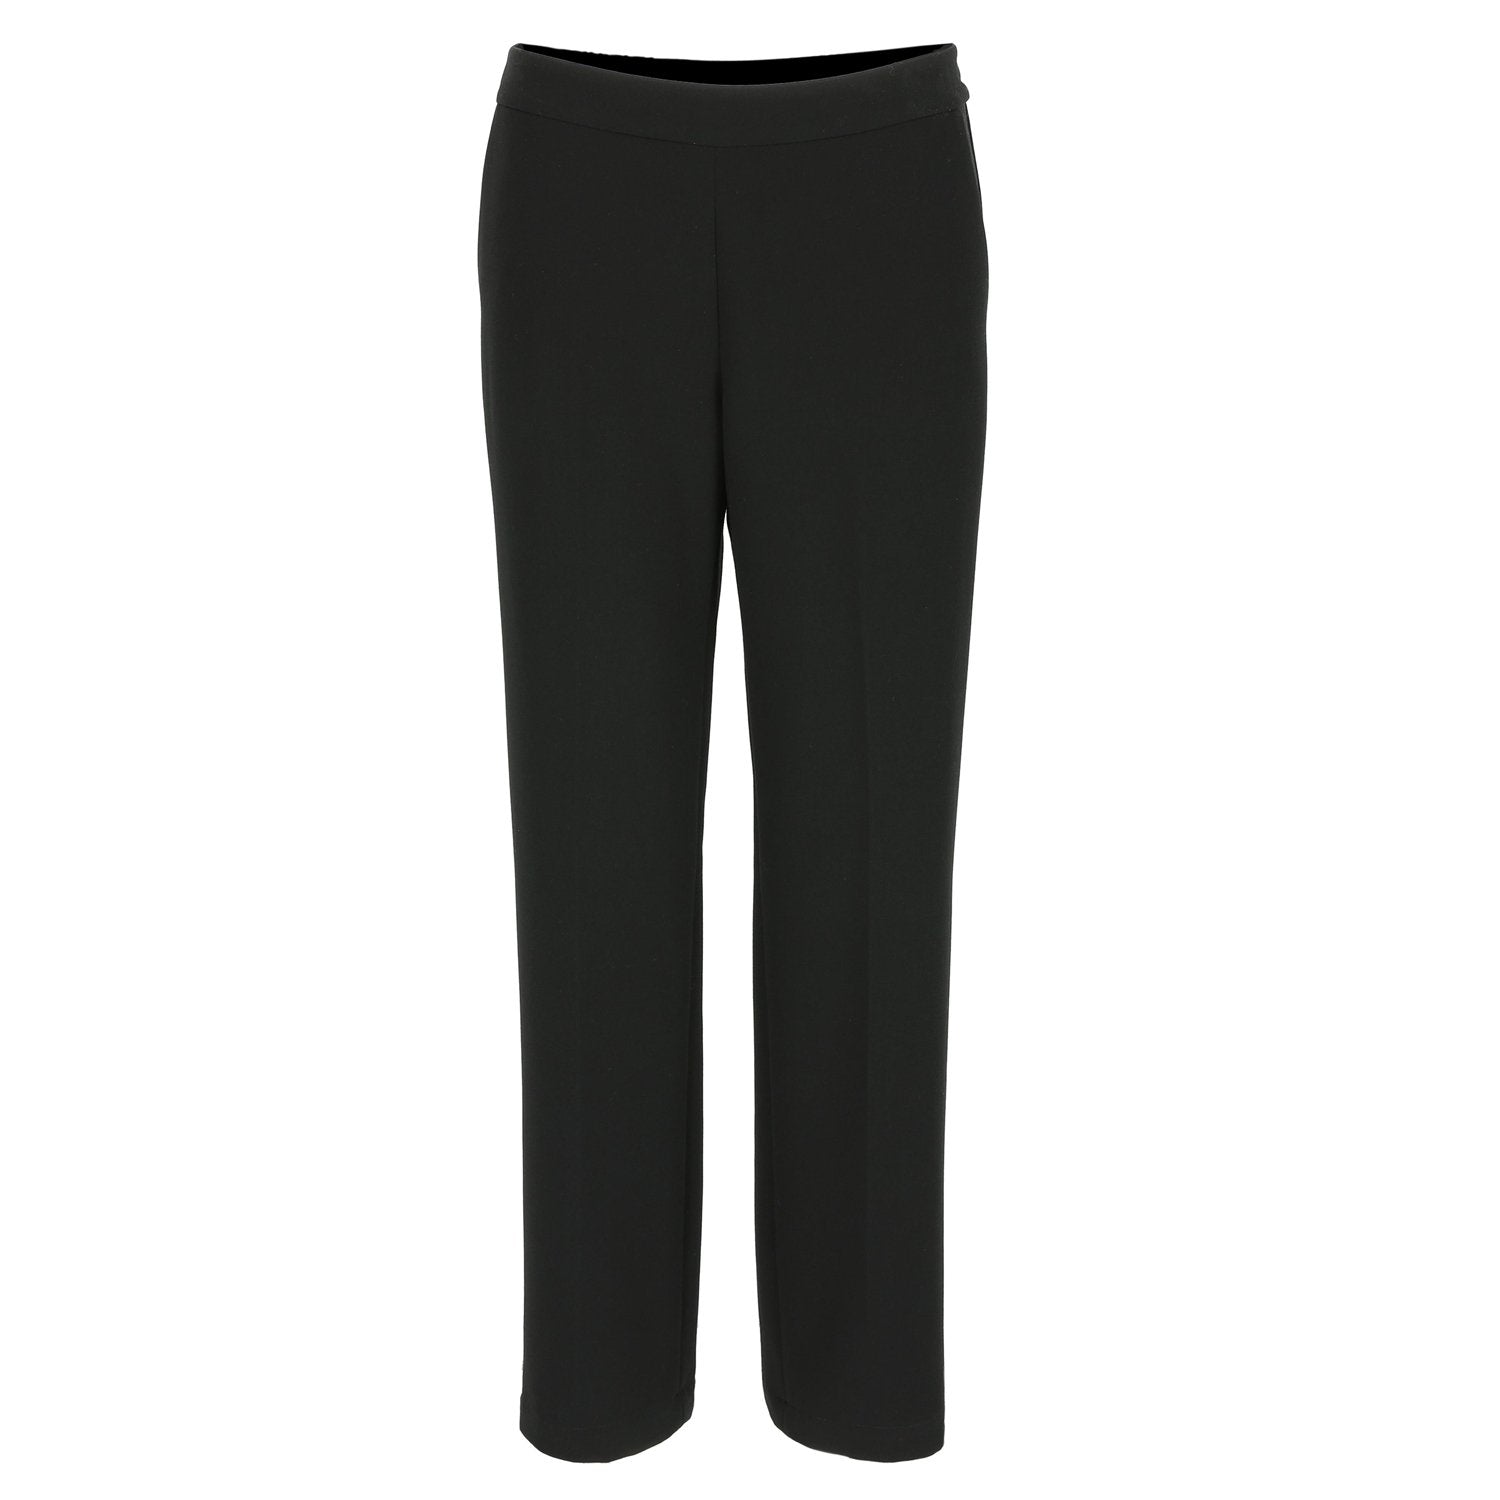 Hampton Bays - scramble trousers black